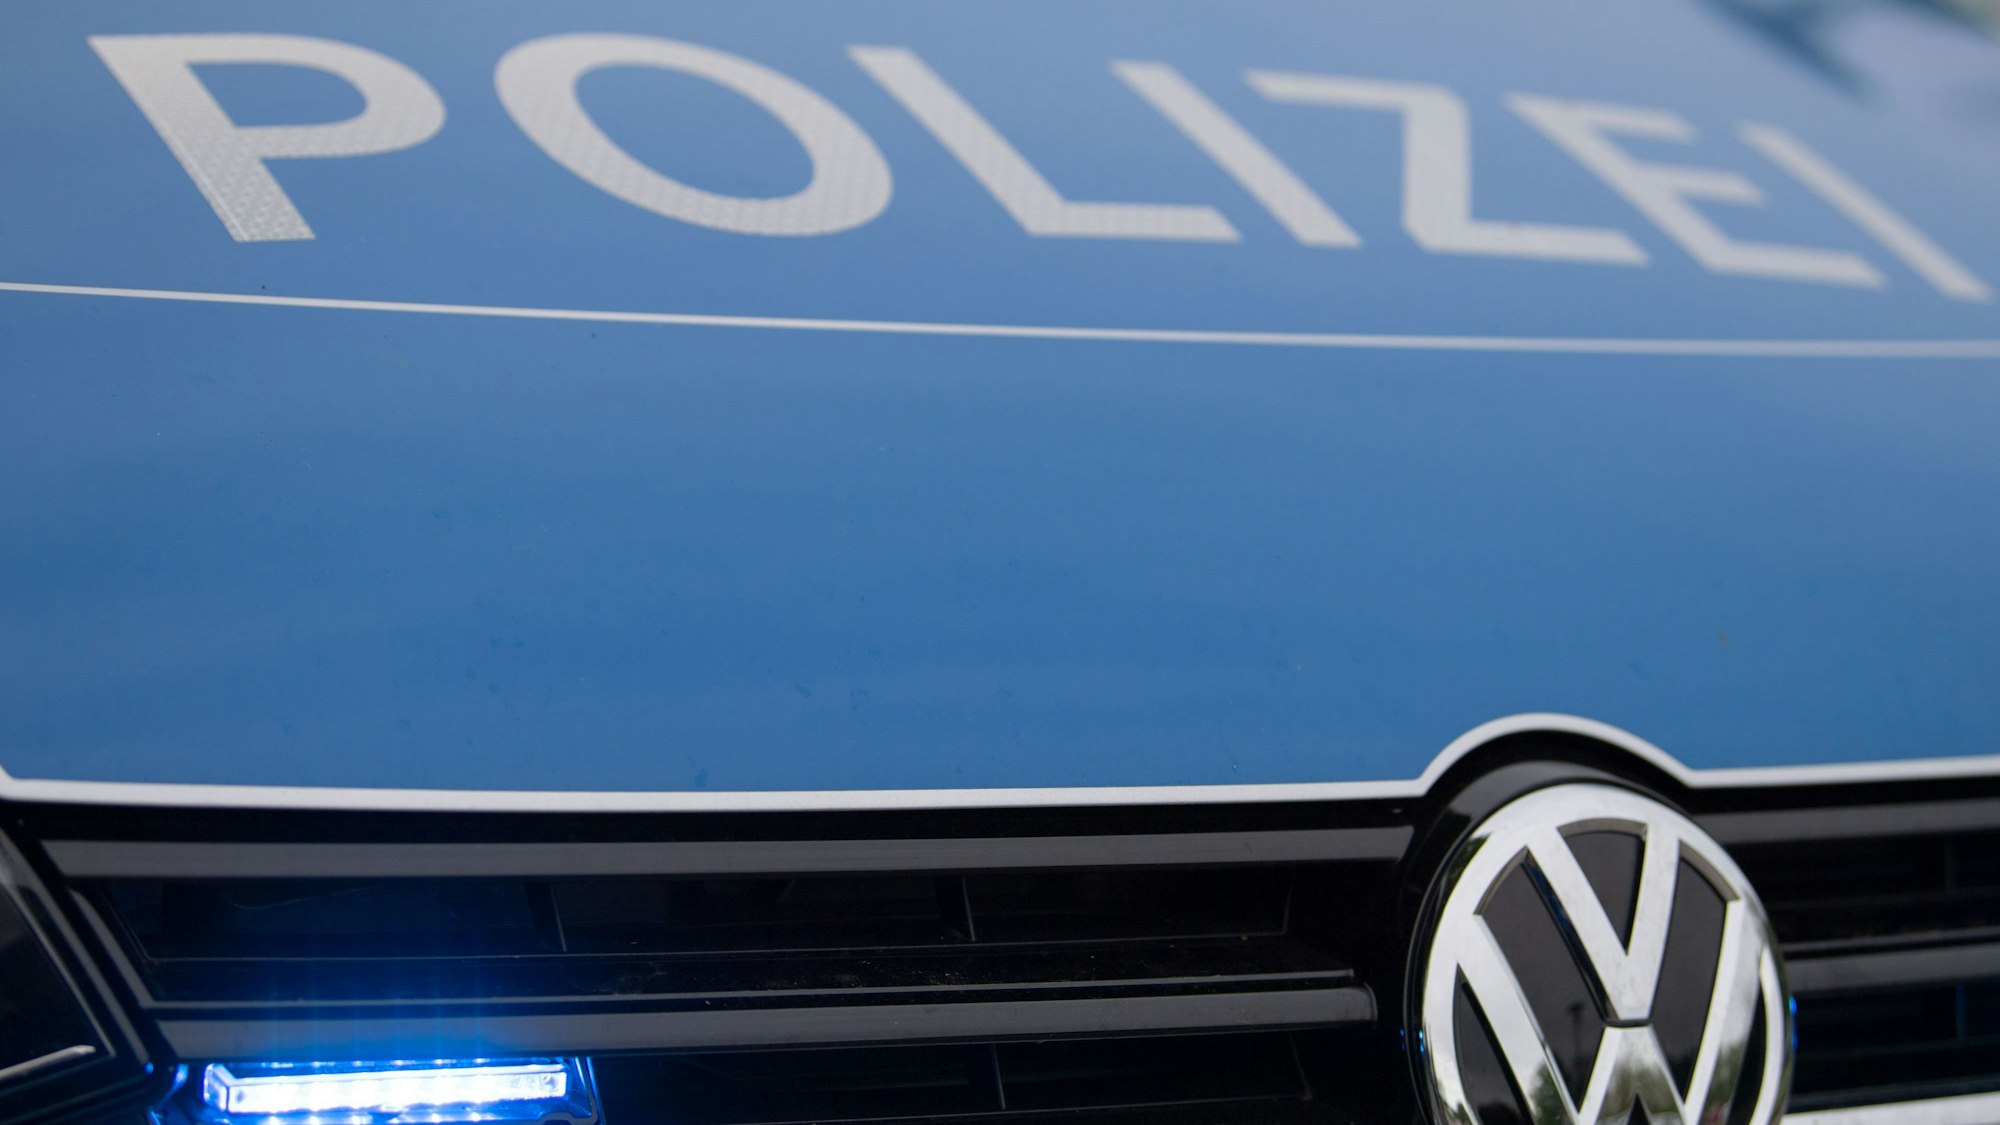 Ein Blaulicht leuchtet im Kühlergrill eines Polizeiautos.